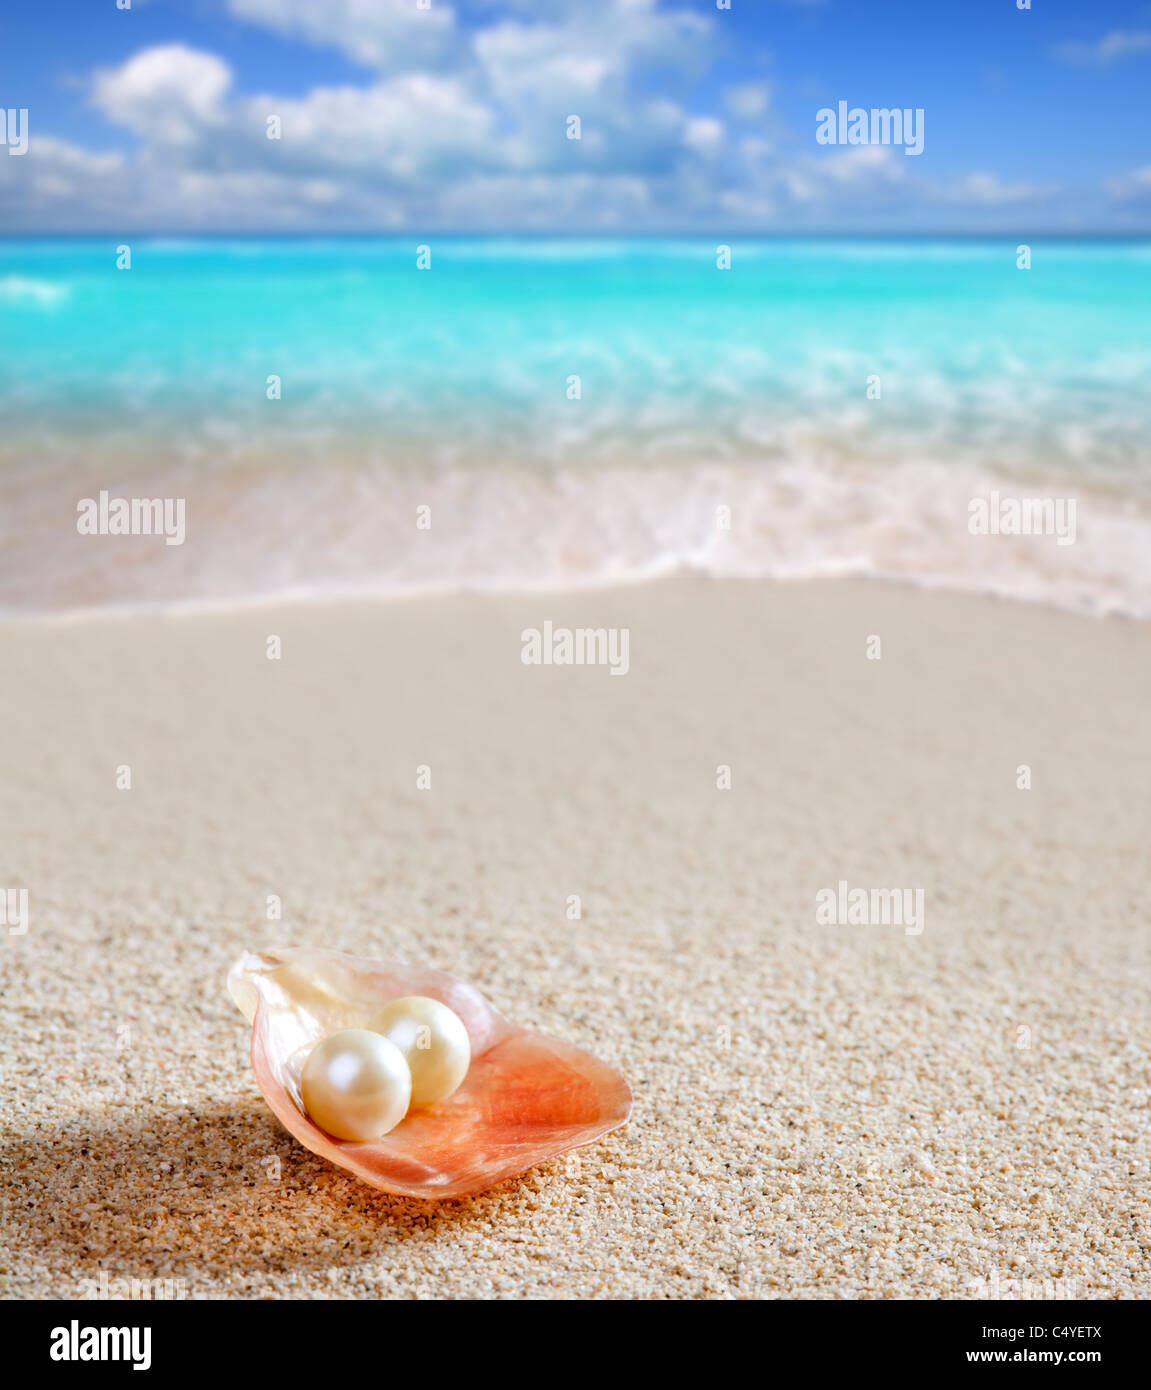 La perla del Caribe en shell a través de una playa de arena blanca, mar turquesa tropical Foto de stock